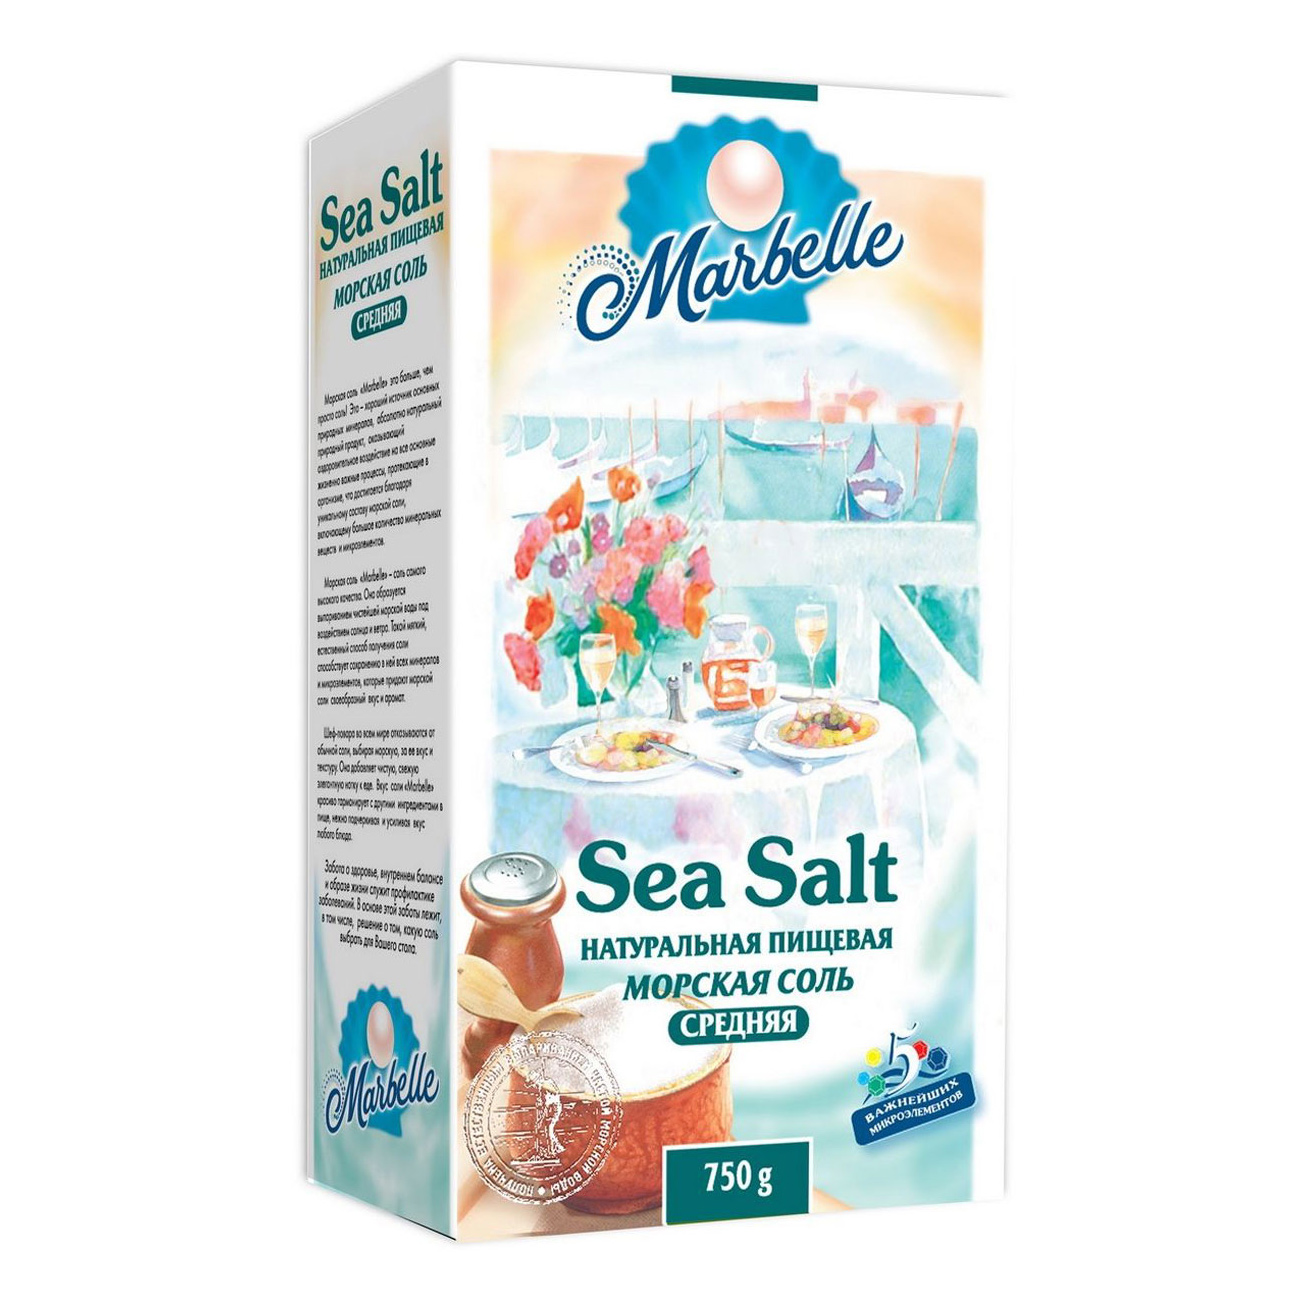 Соль Marbelle морская пищевая средняя 750 г соль морская пудофф marbelle средняя помол 1 750 г